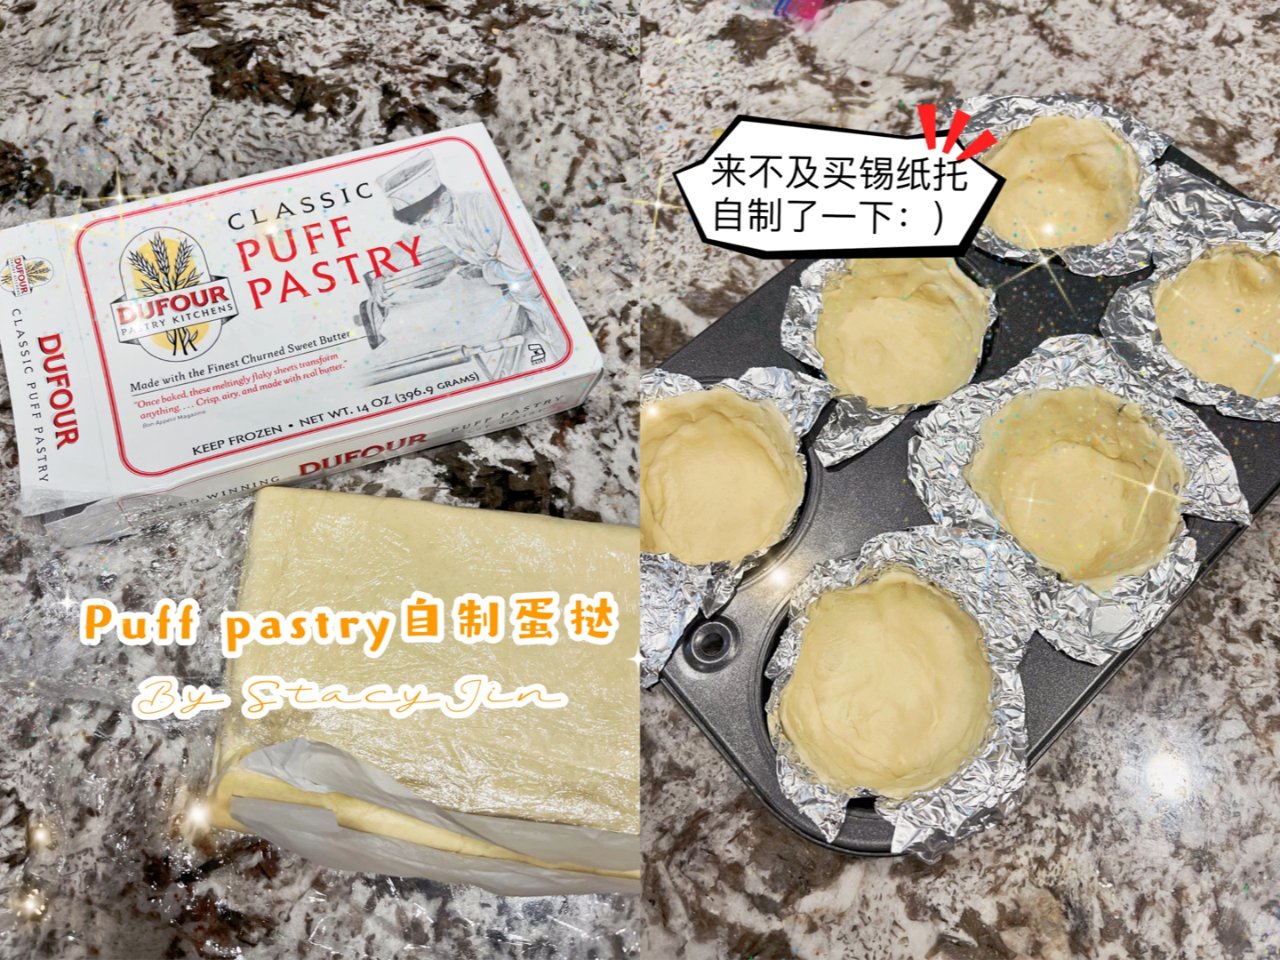 Puff pastry 自制蛋挞皮 第一...